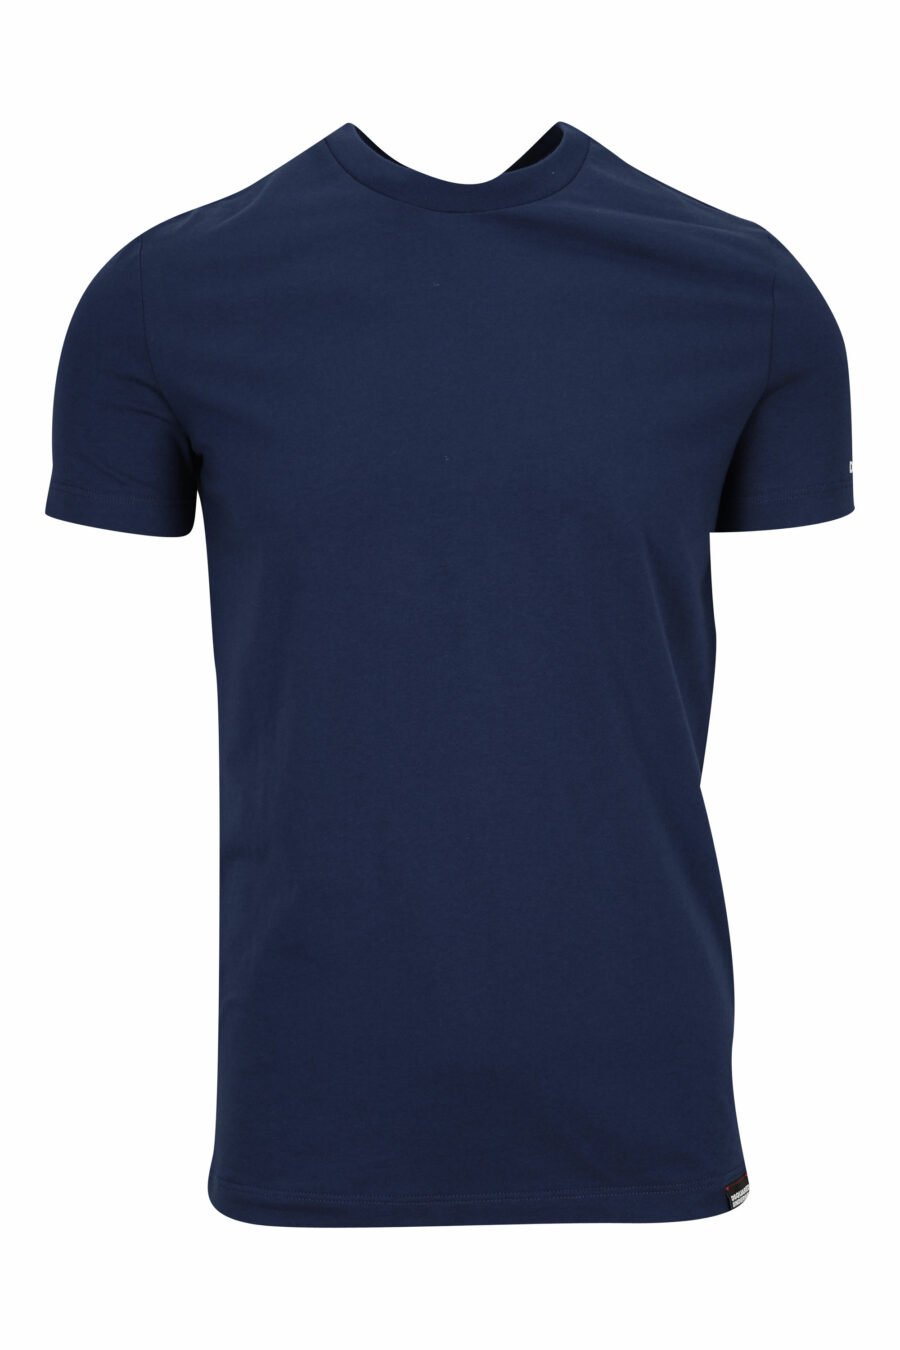 Camiseta azul oscuro con minilogo "underwear" blanco - 8032674811684